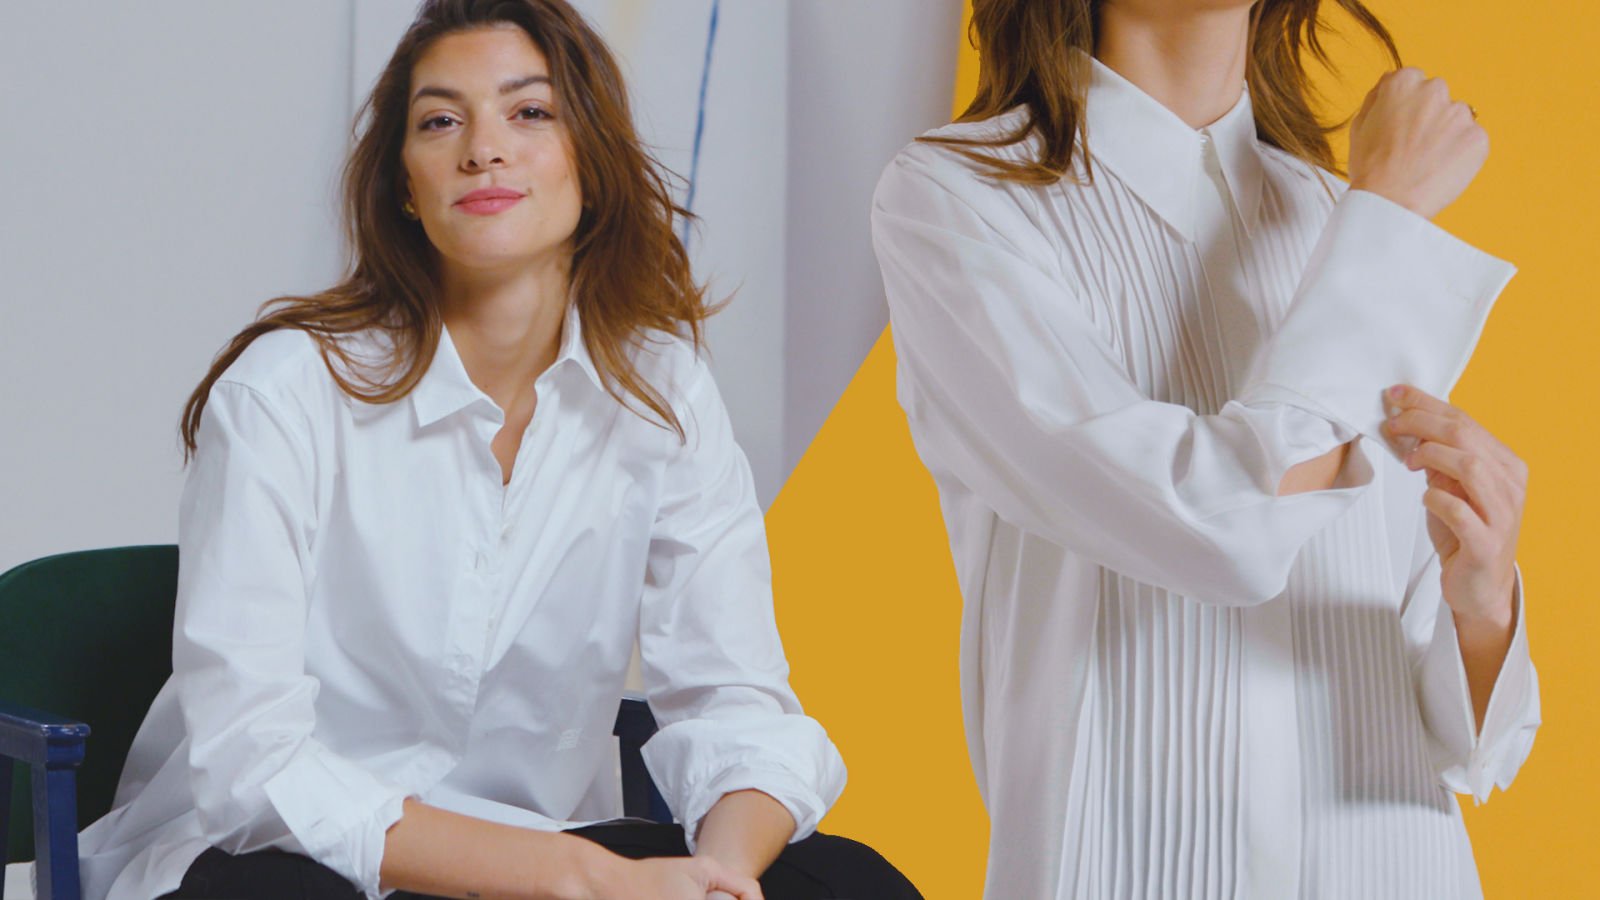 La camisa blanca: 4 formas de combinarla y cómo elegir la perfecta